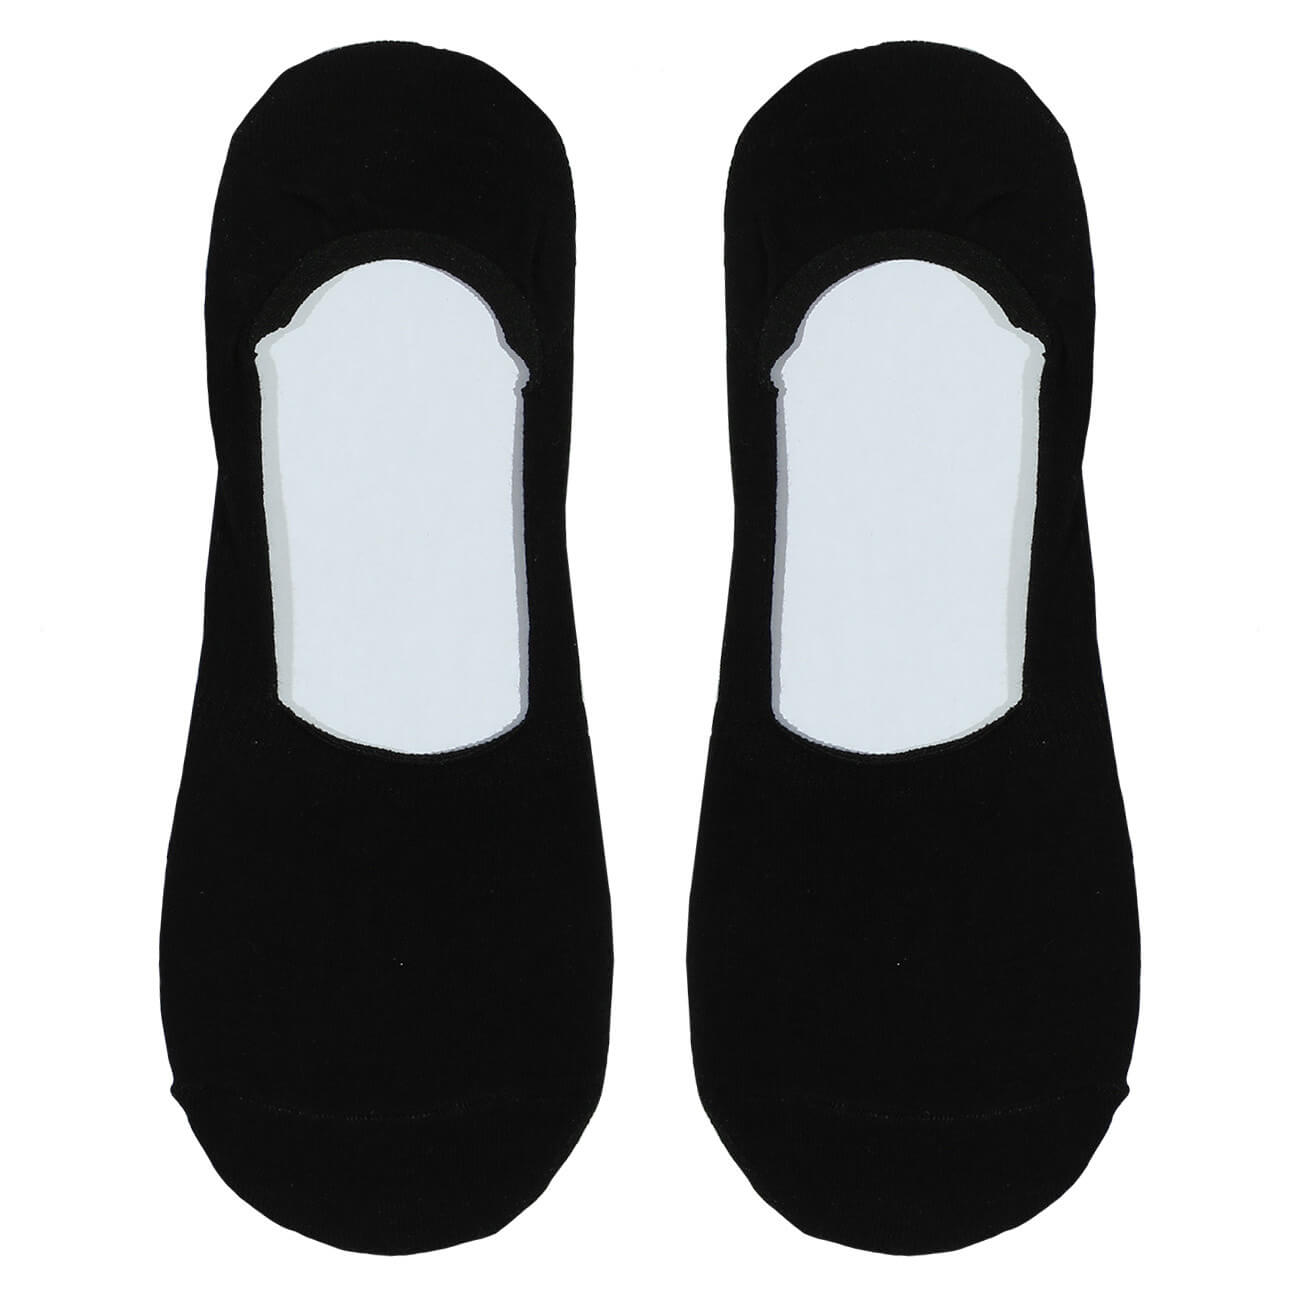 Носки-следки женские, р. 36-38, хлопок/полиэстер, черные, Basic носки следки женские р 36 38 хлопок полиэстер белые basic